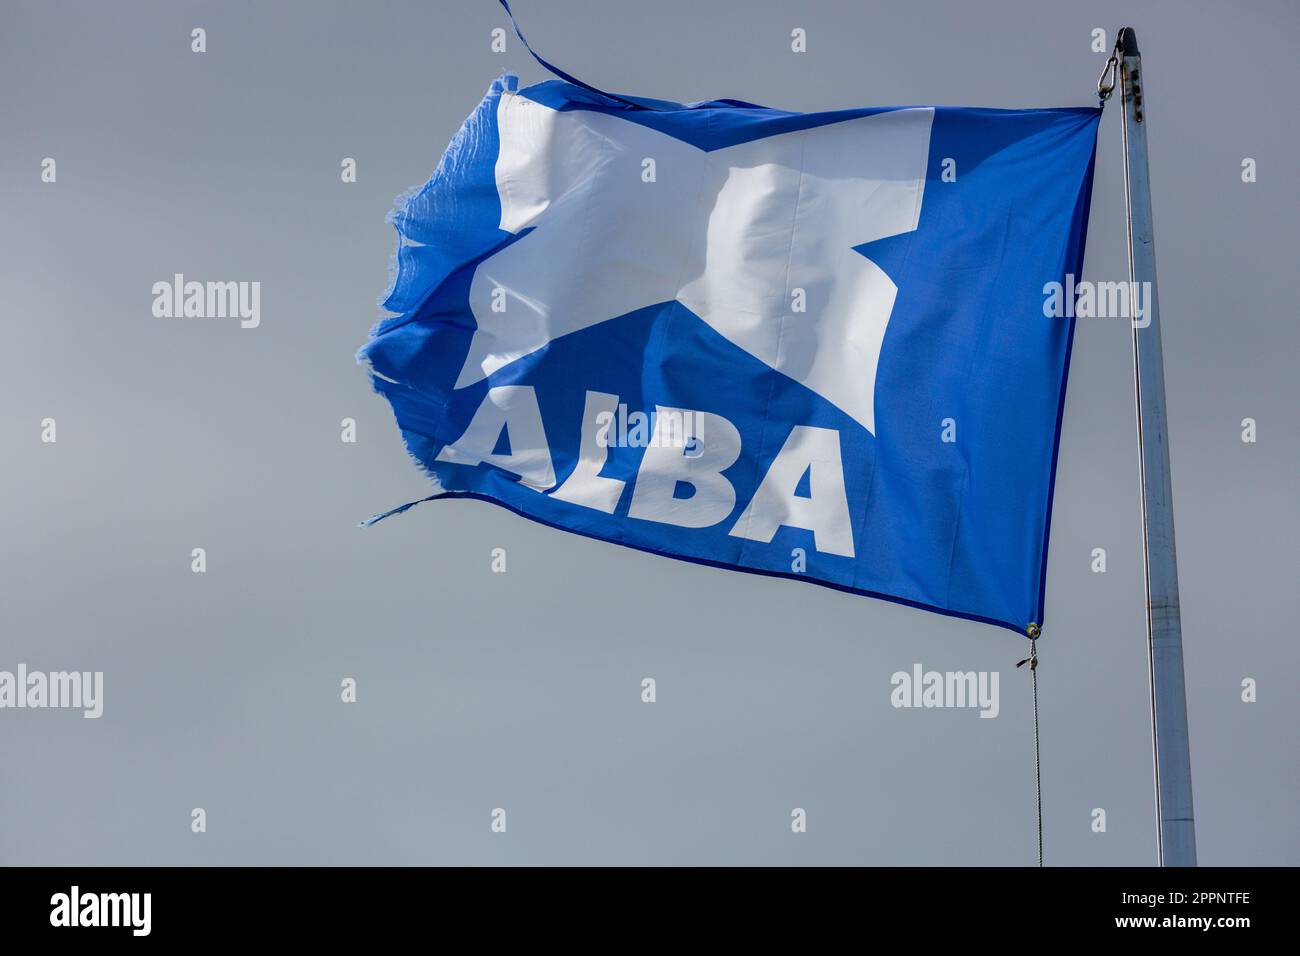 Bandiera scozzese Alba Party che vola contro un cielo grigio Foto Stock